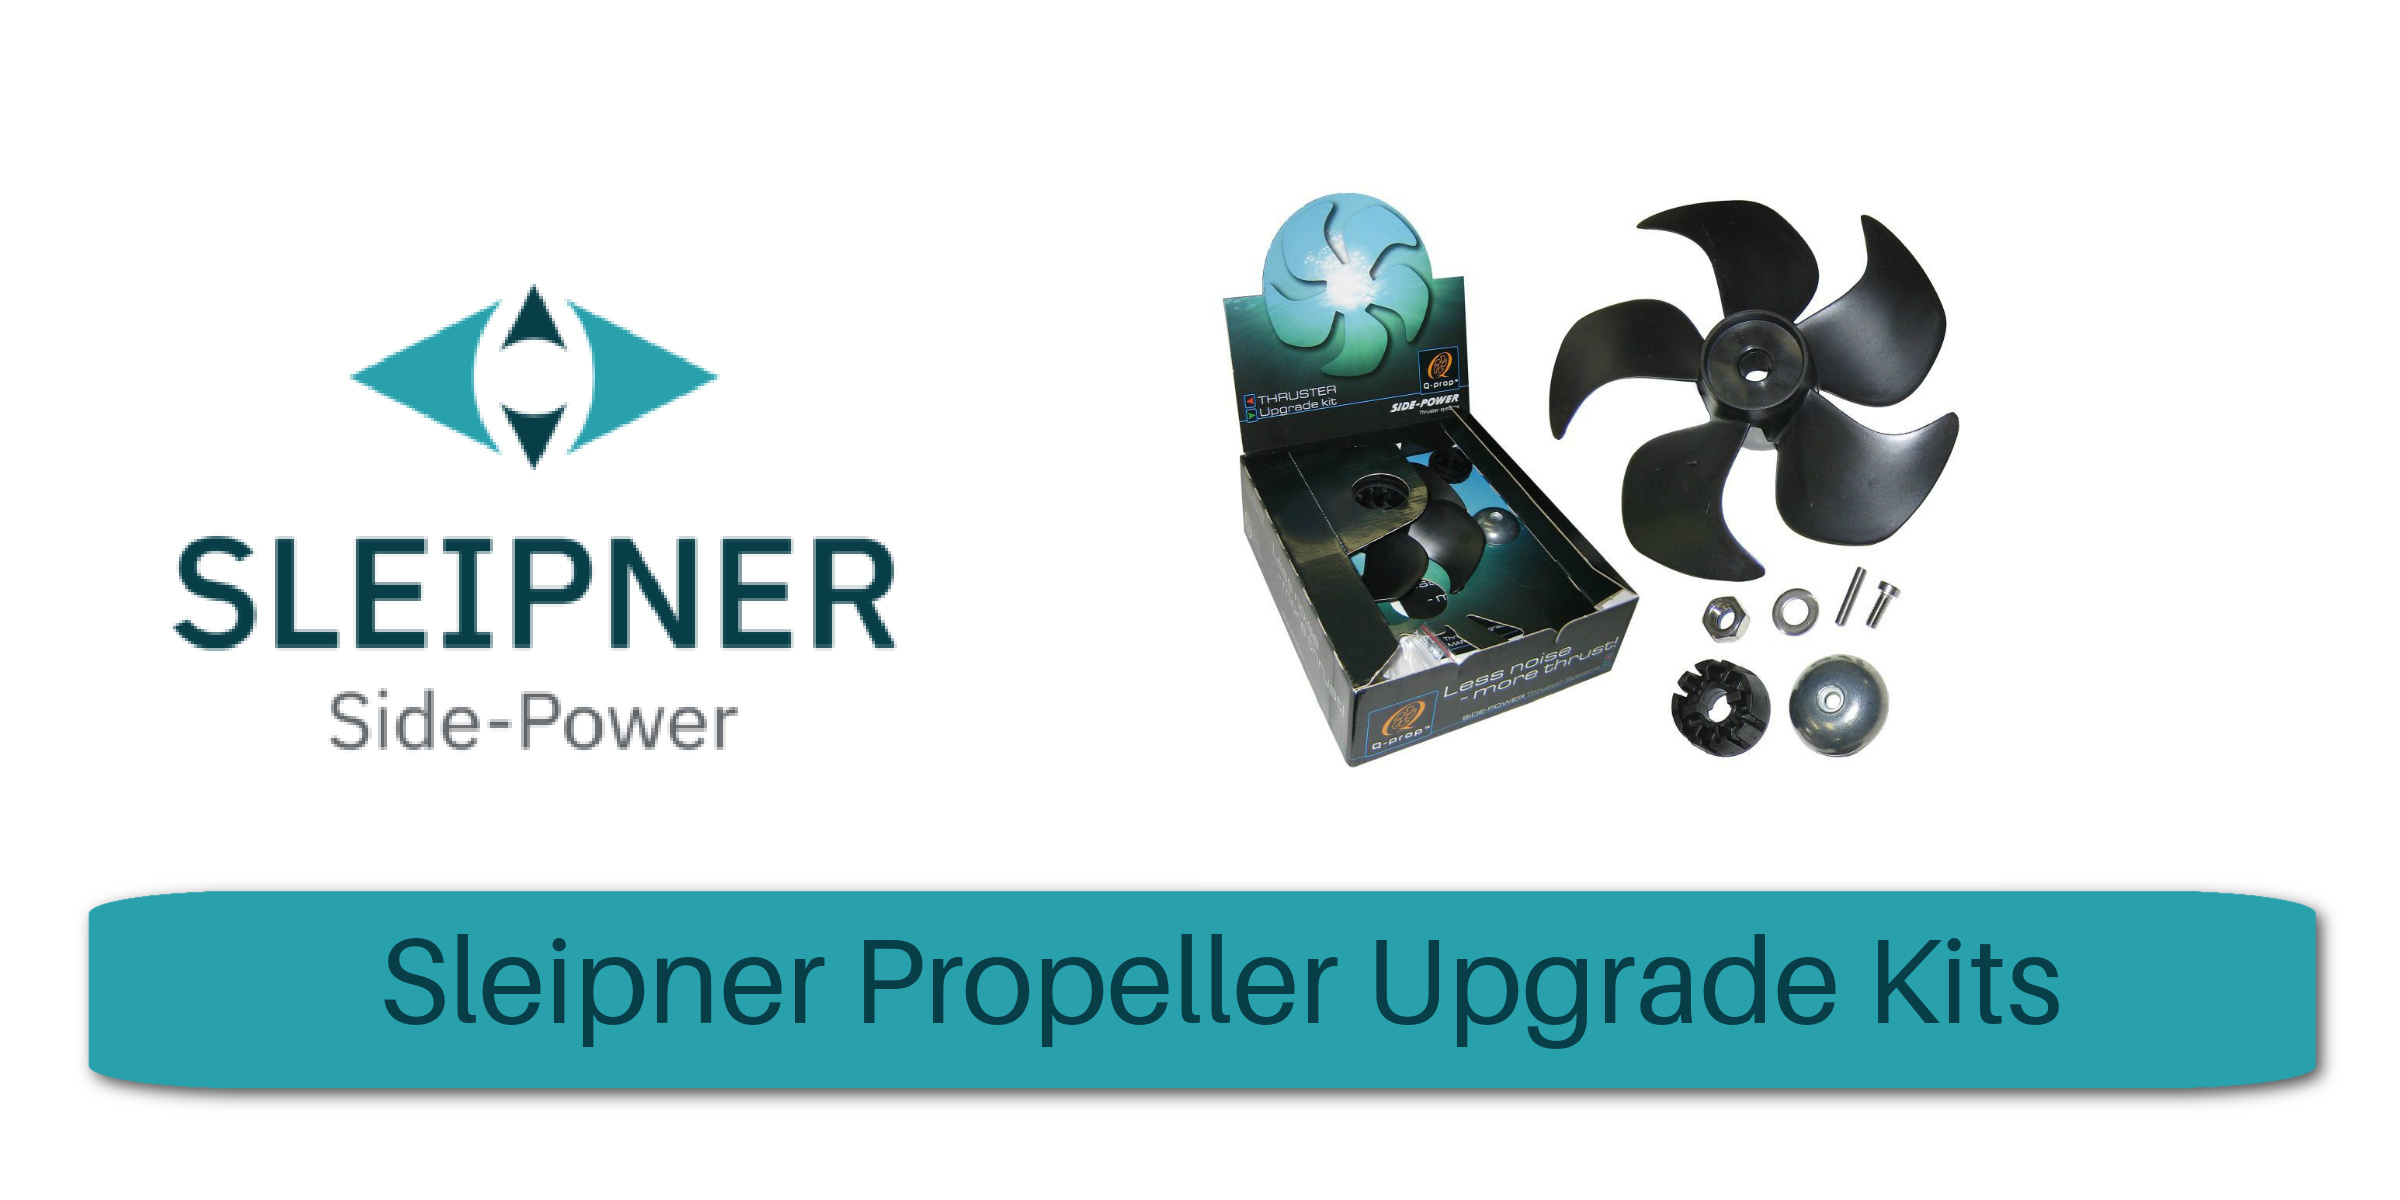 Sleipner Propeller Upgrade Kits